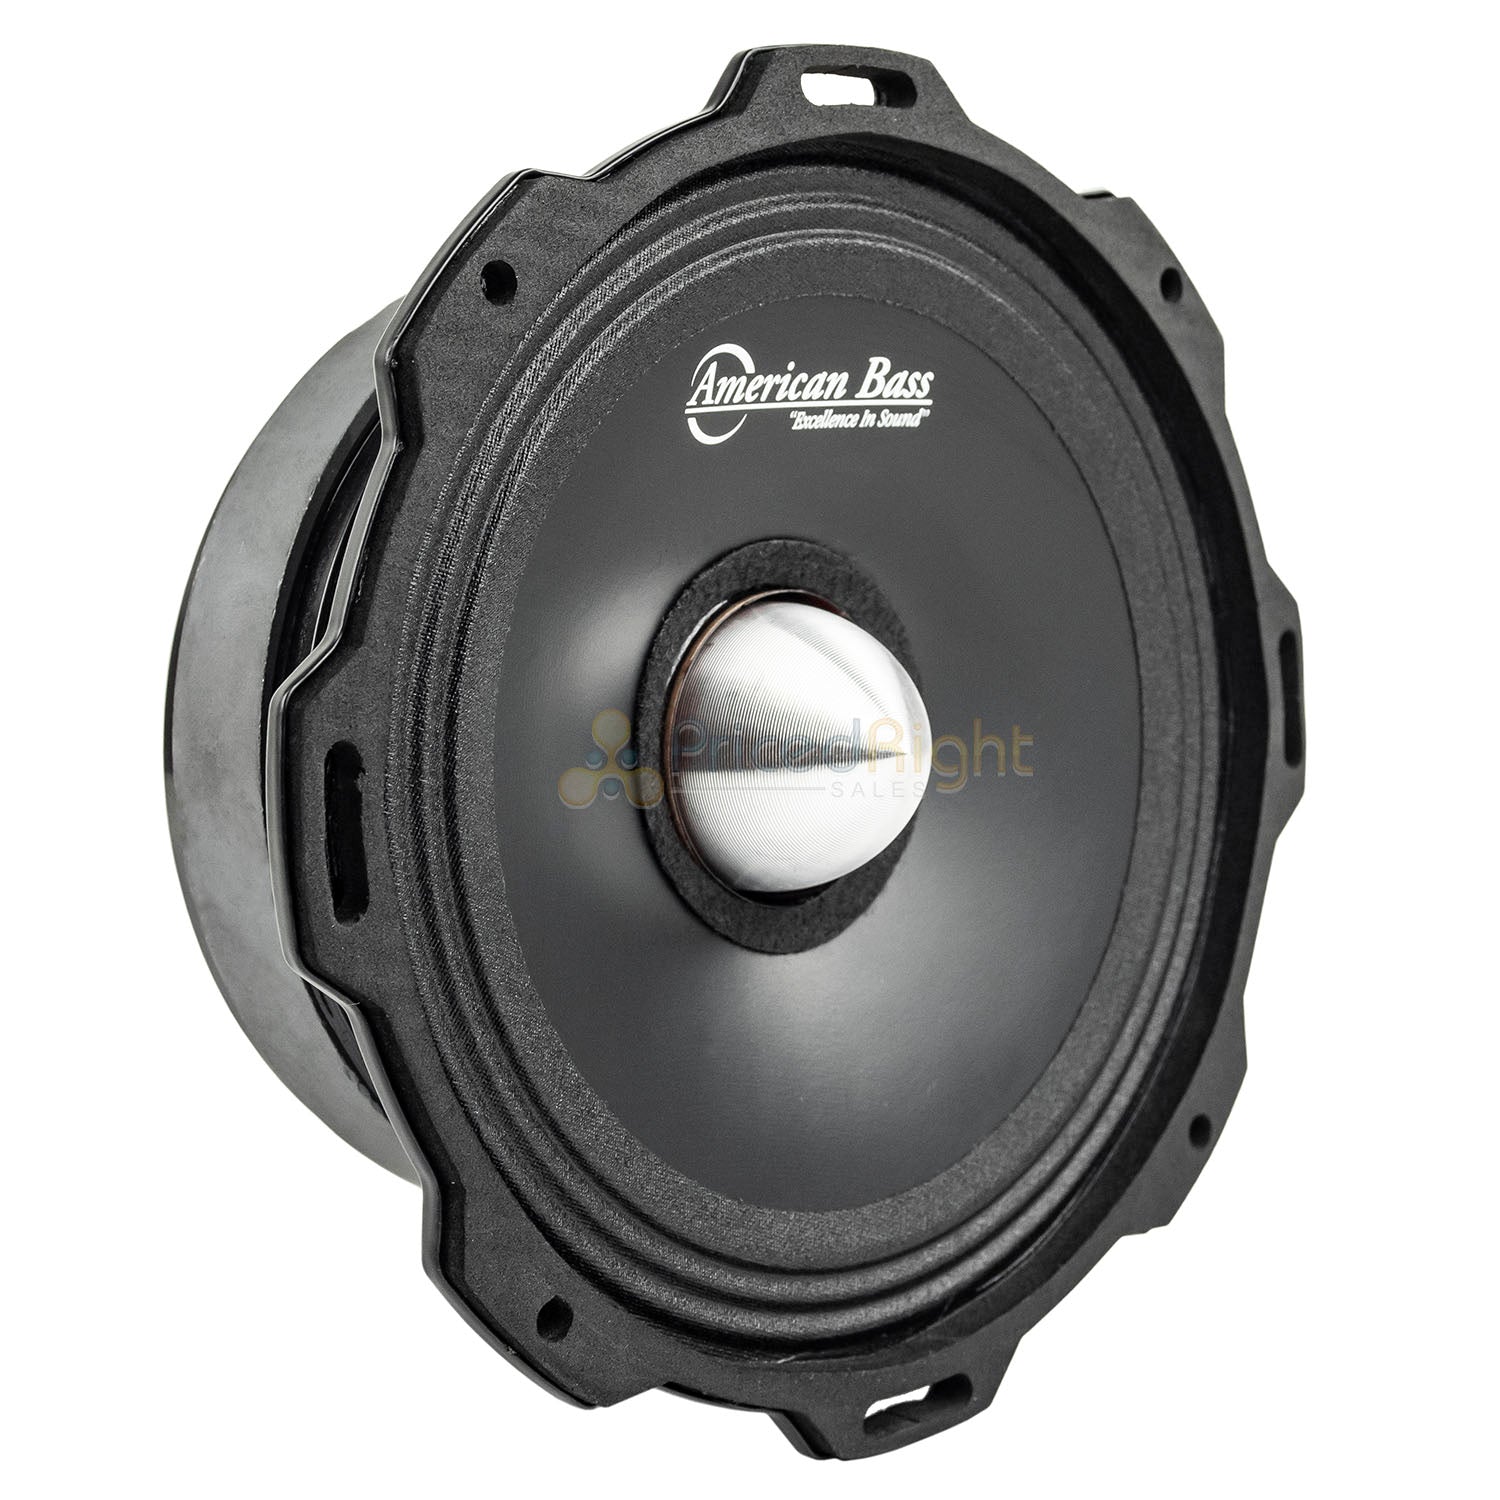 American Bass GF-6.5 L-MR 6.5" Midrange Speakers Godfather 600 Watts Max 4 Pack